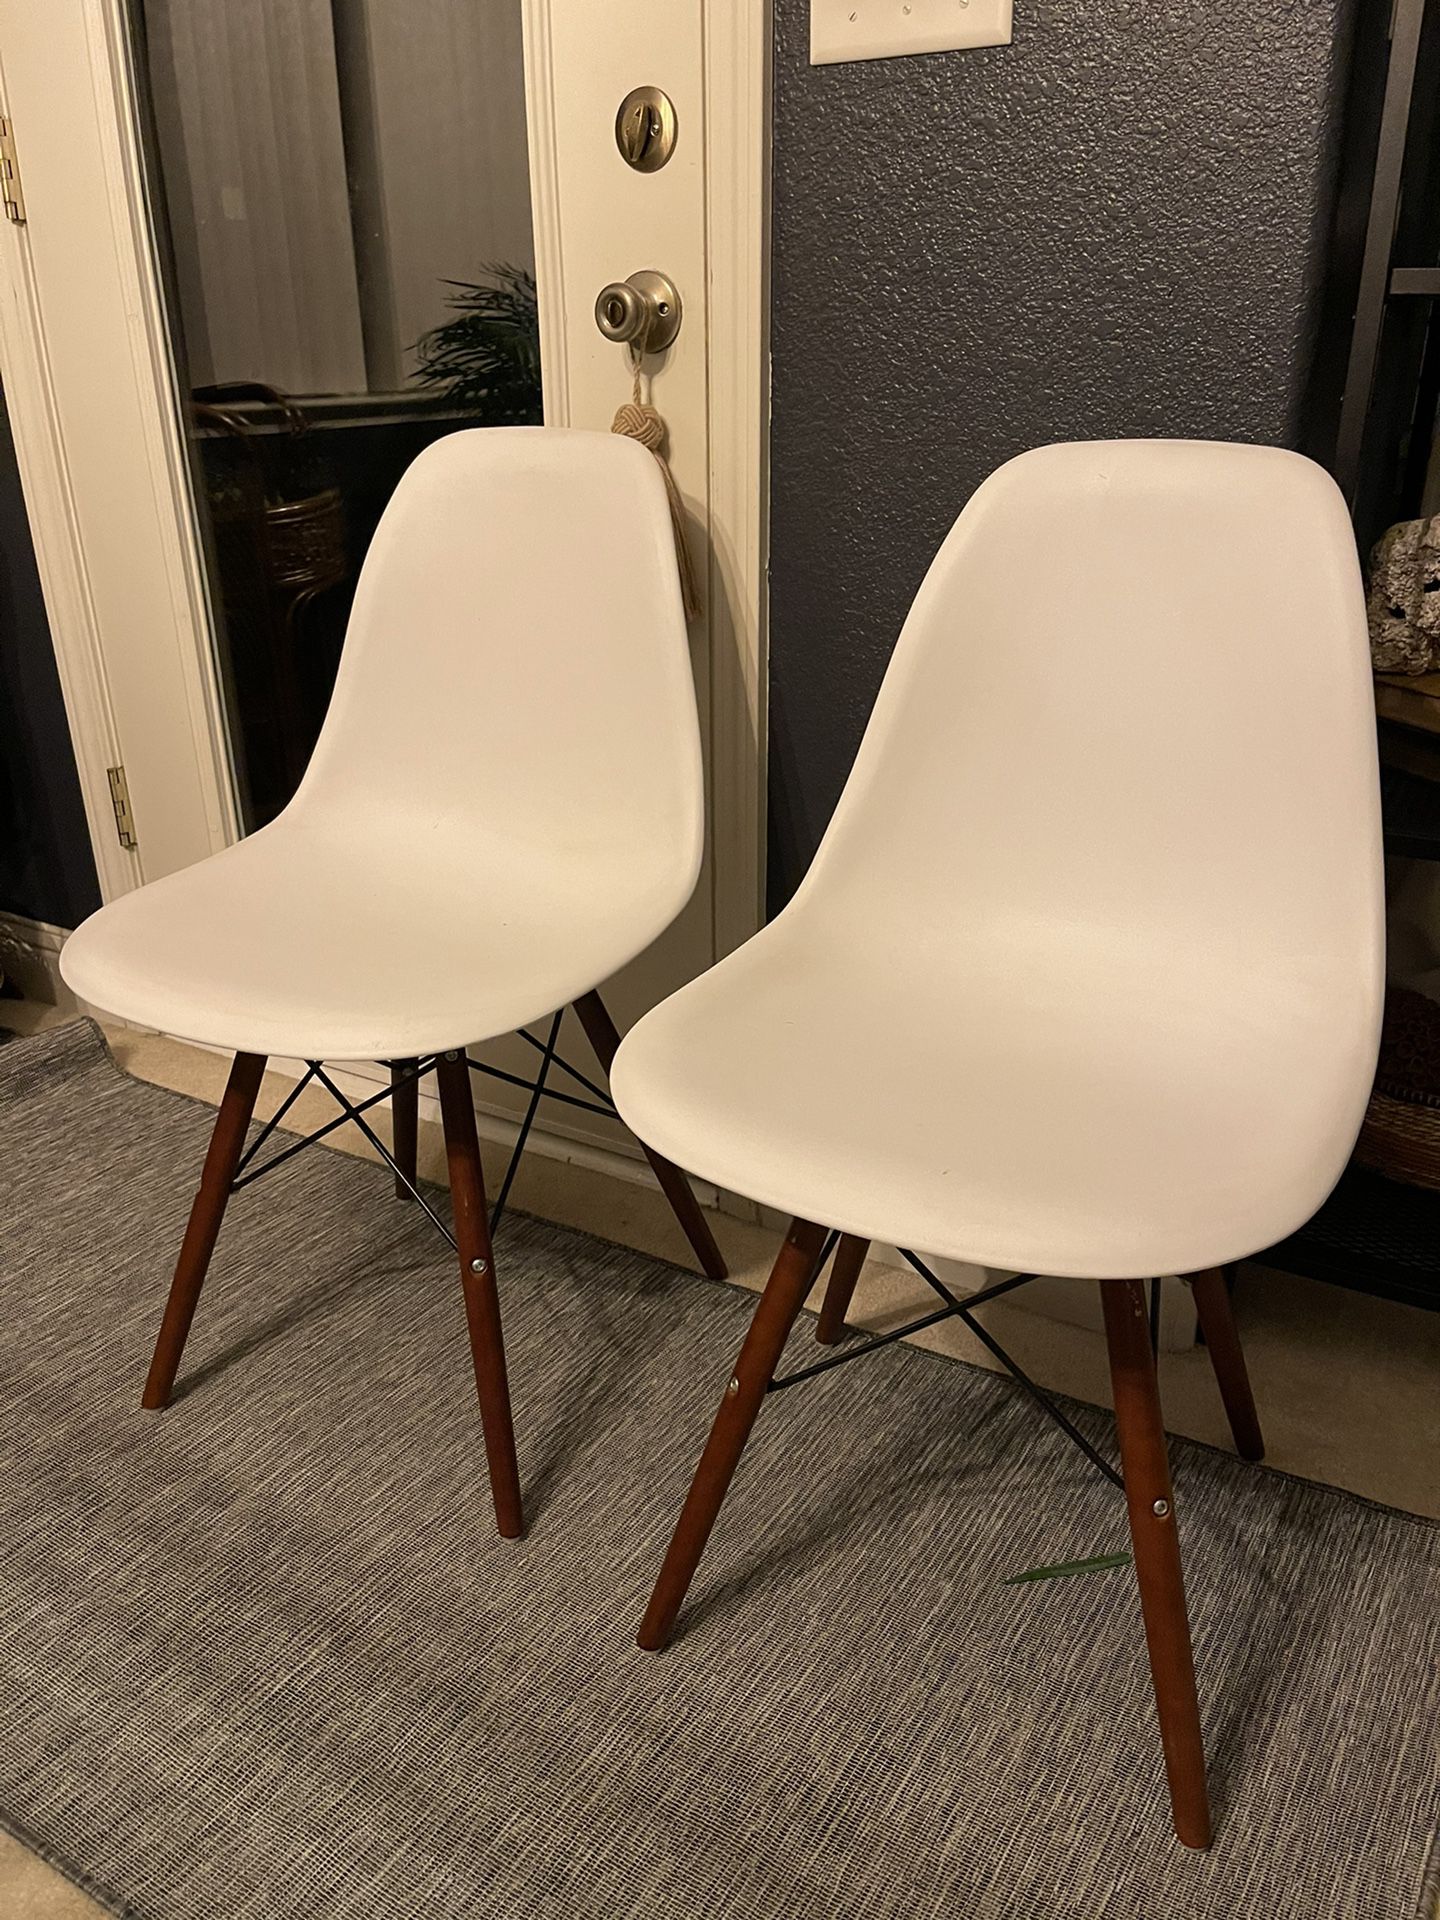 Modern White Chairs